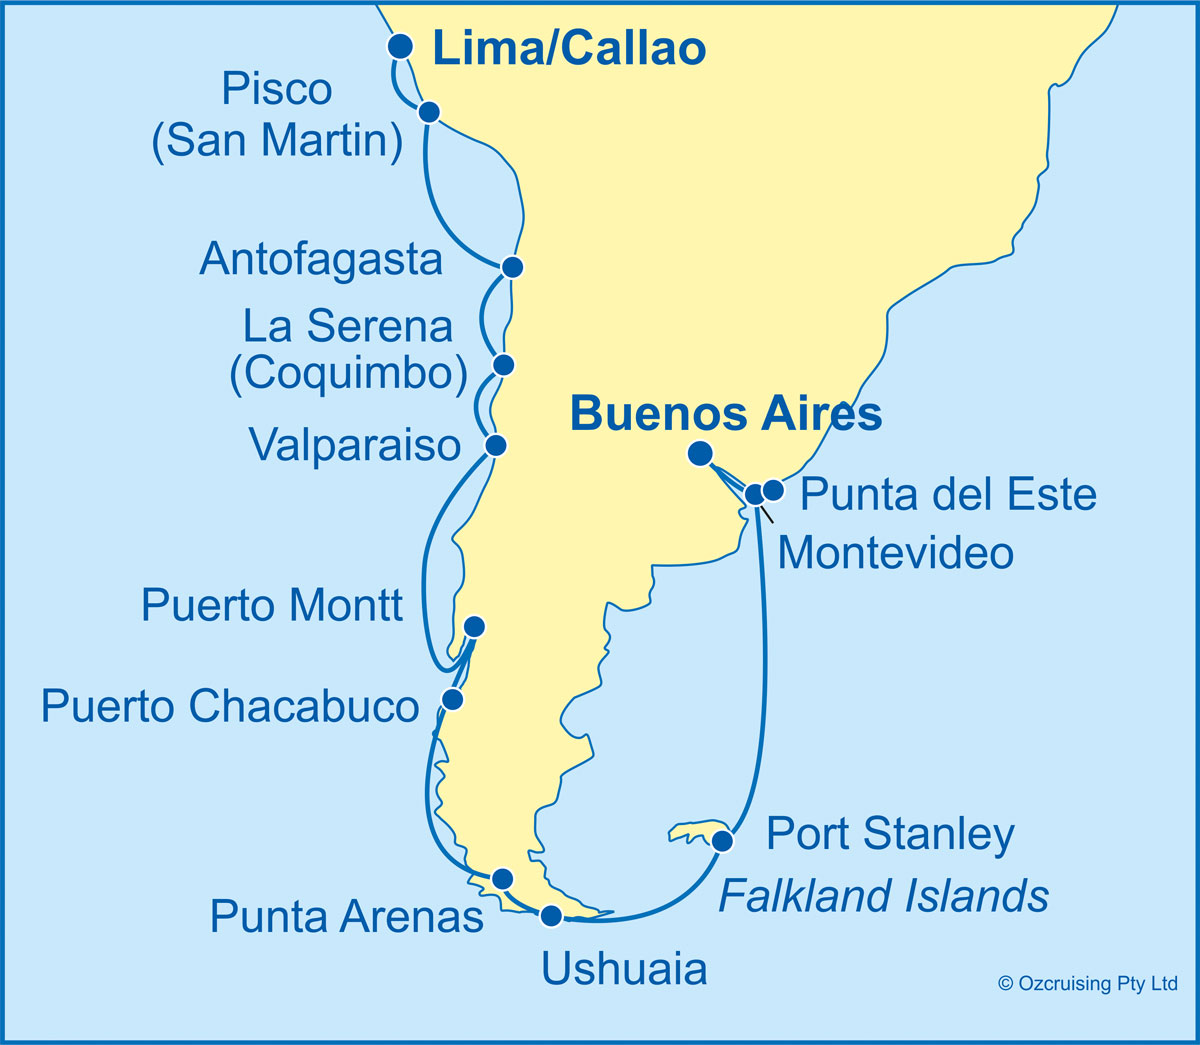 Azamara Pursuit Lima to Buenos Aires - Cruises.com.au